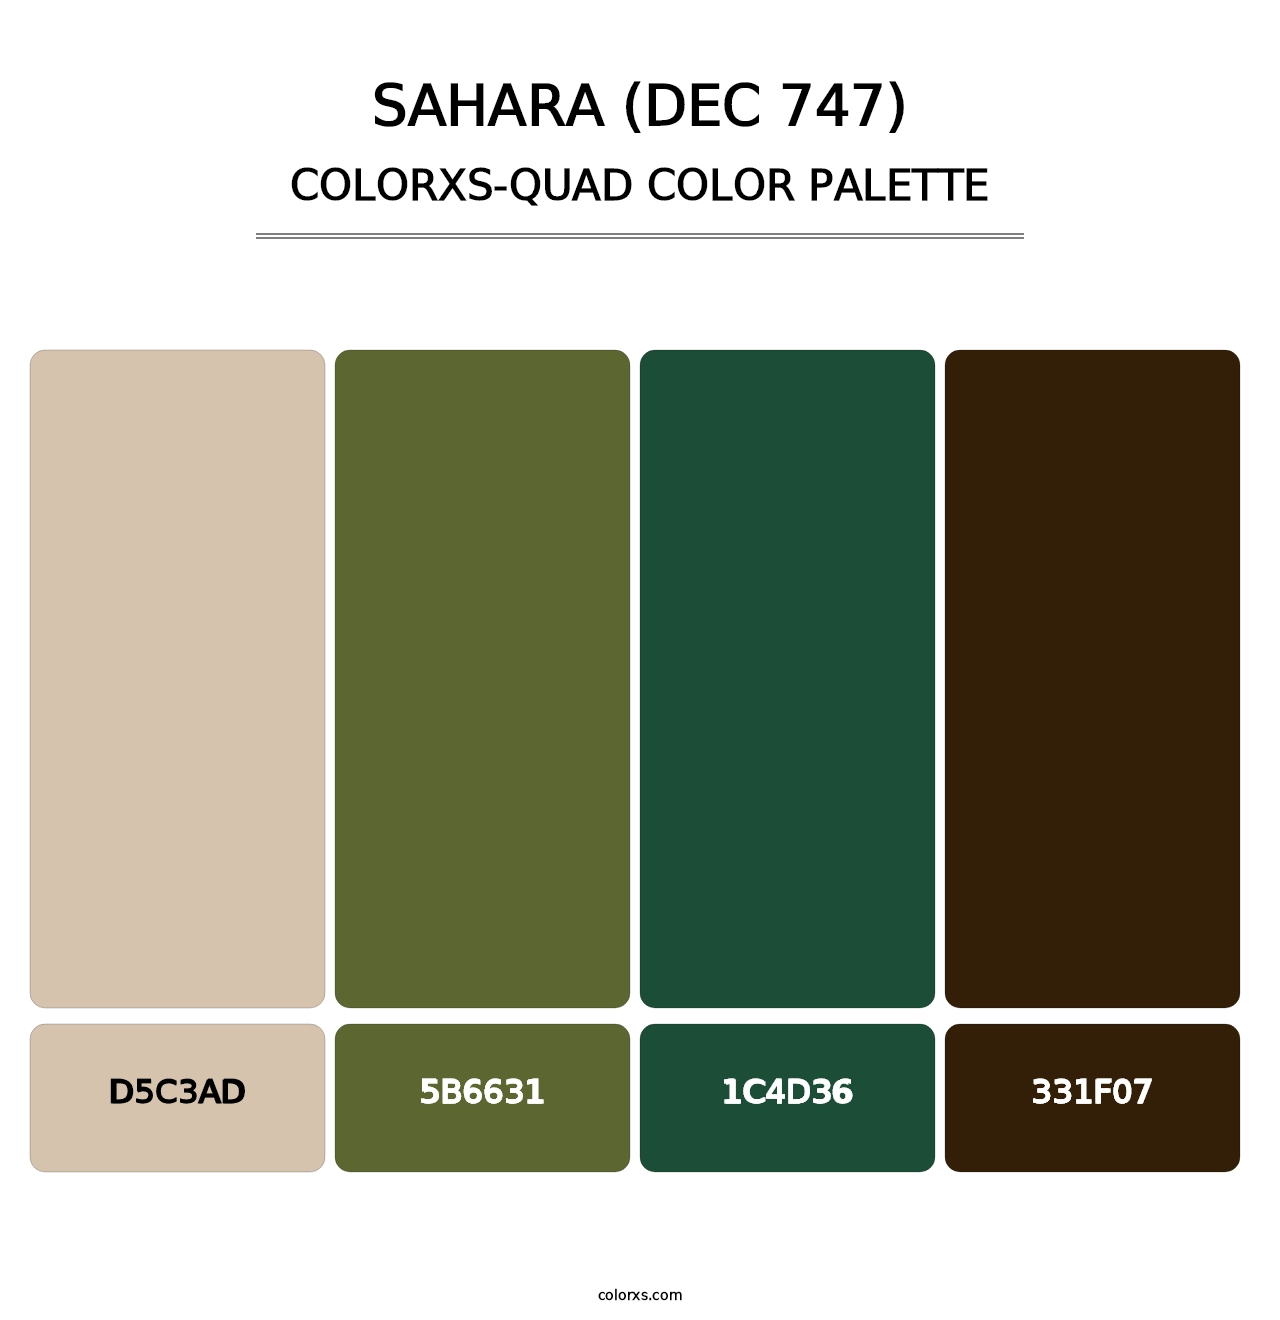 Sahara (DEC 747) - Colorxs Quad Palette